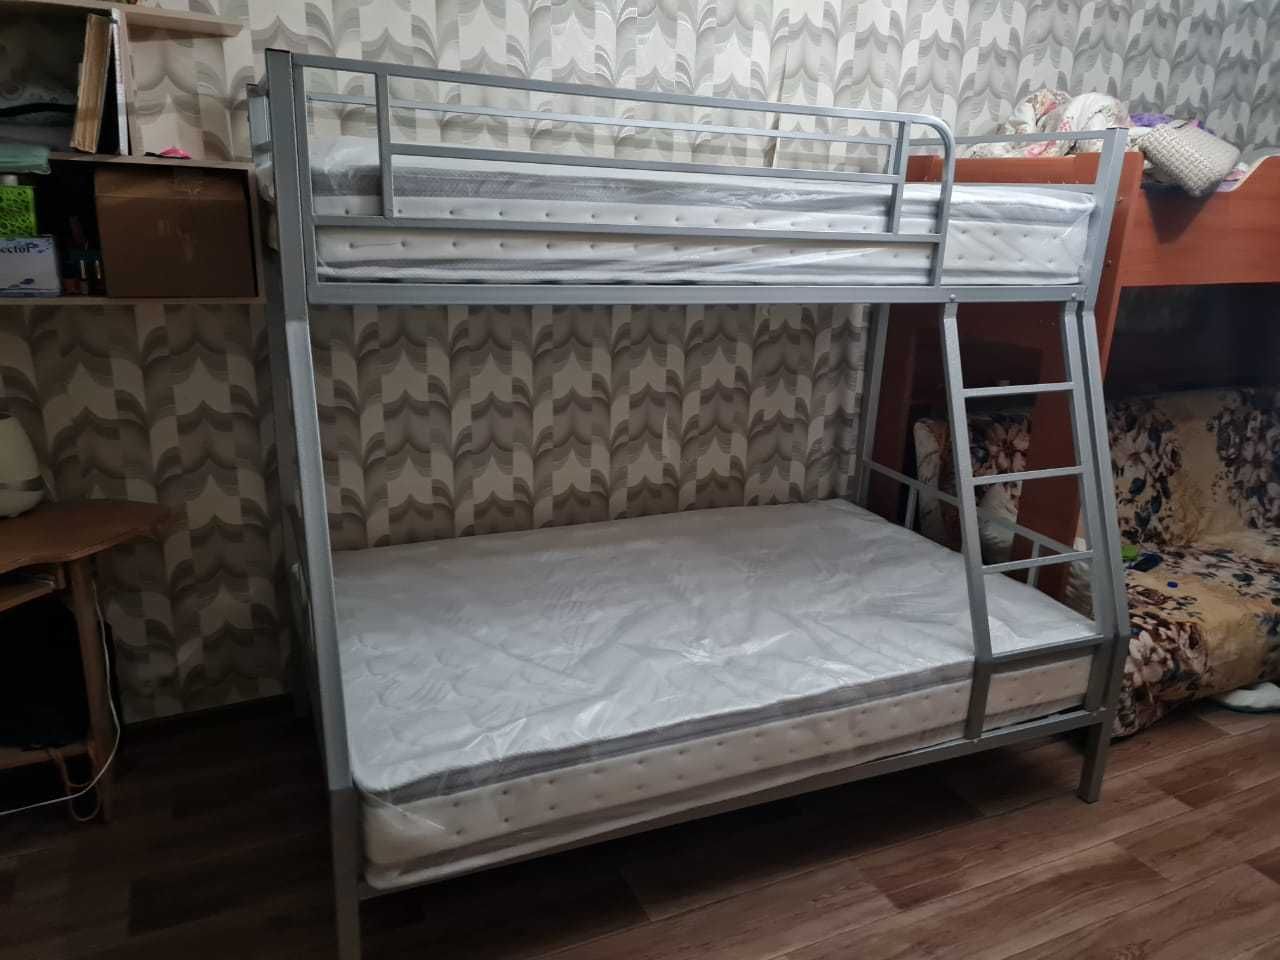 Металлическая двухъярусная кровать для взрослых . Доставка из Алматы.